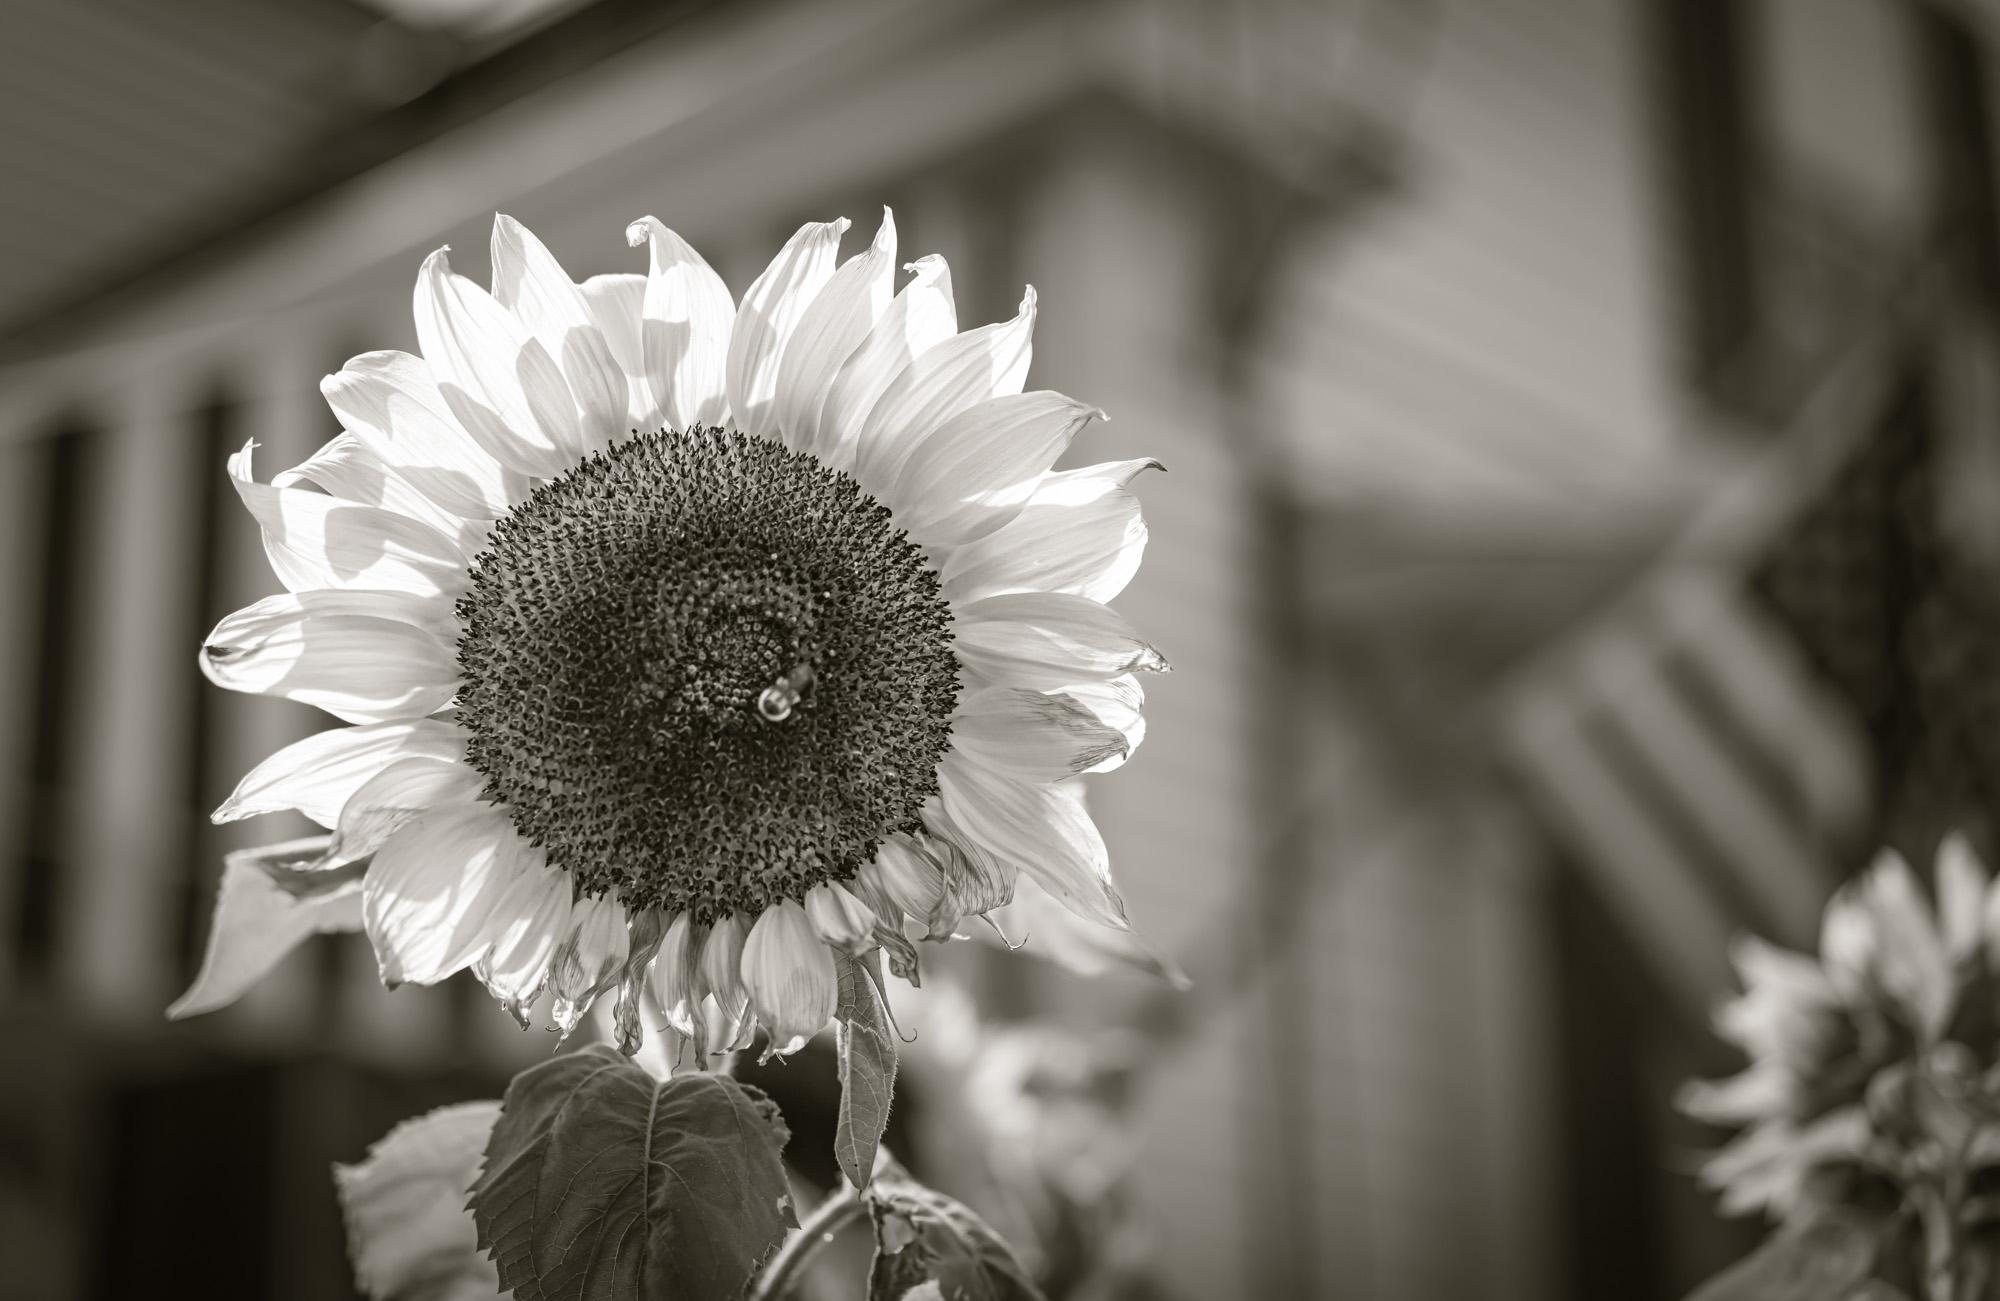  Photographie en noir et blanc en édition limitée - Botanical, « Bright Day », 2020